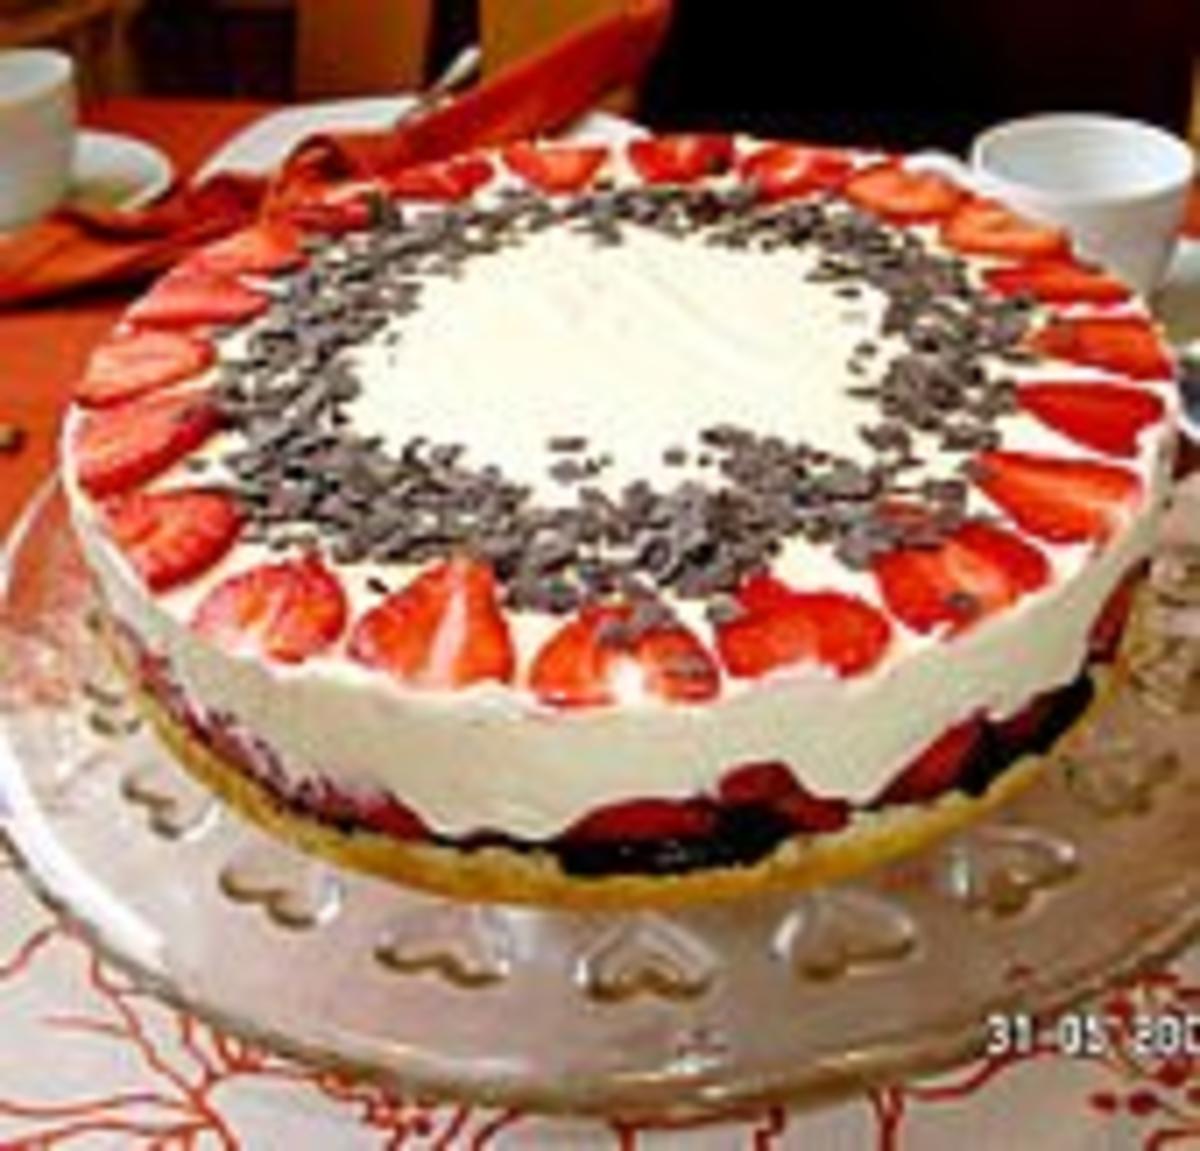 Erdbeer-Mascarpone-Torte - Rezept - Bild Nr. 3